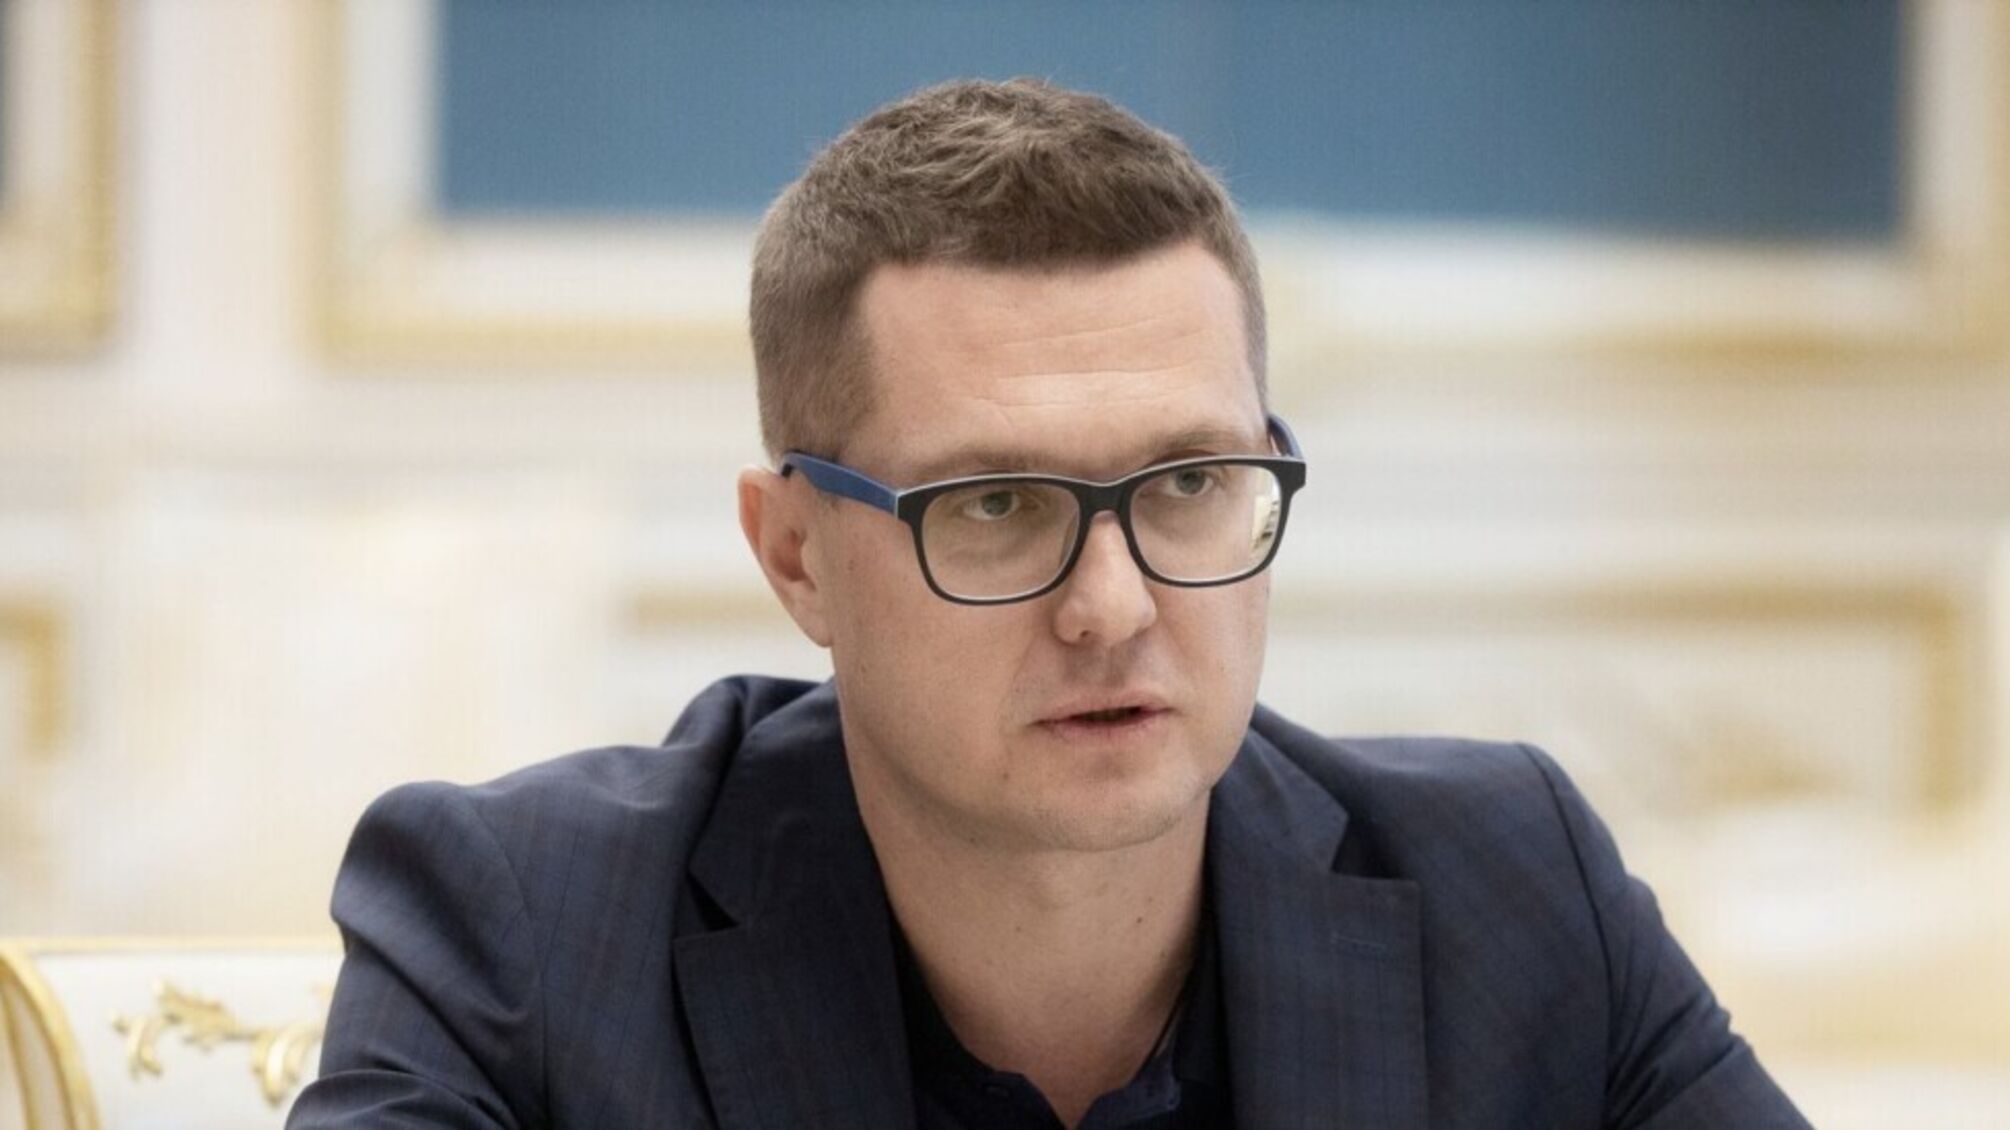  колишній керівник СБУ Іван Баканов  у справі щодо окупації України та перебуває під слідством